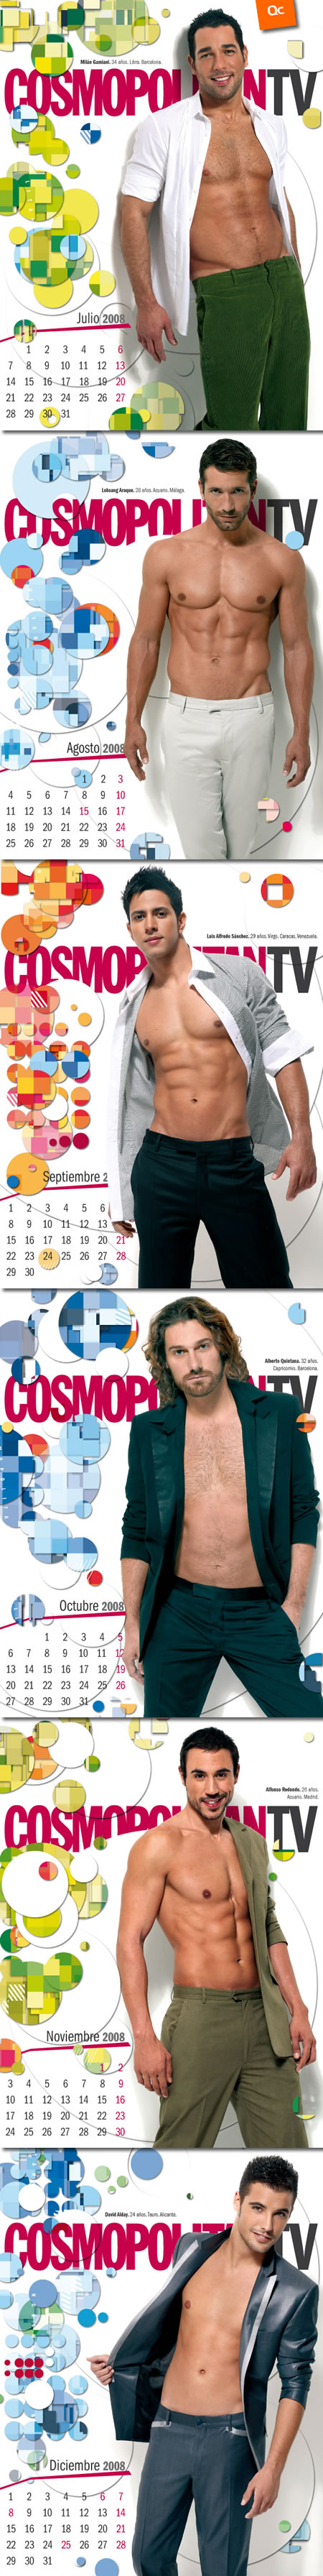 Calendario Cosmopolitan 2008